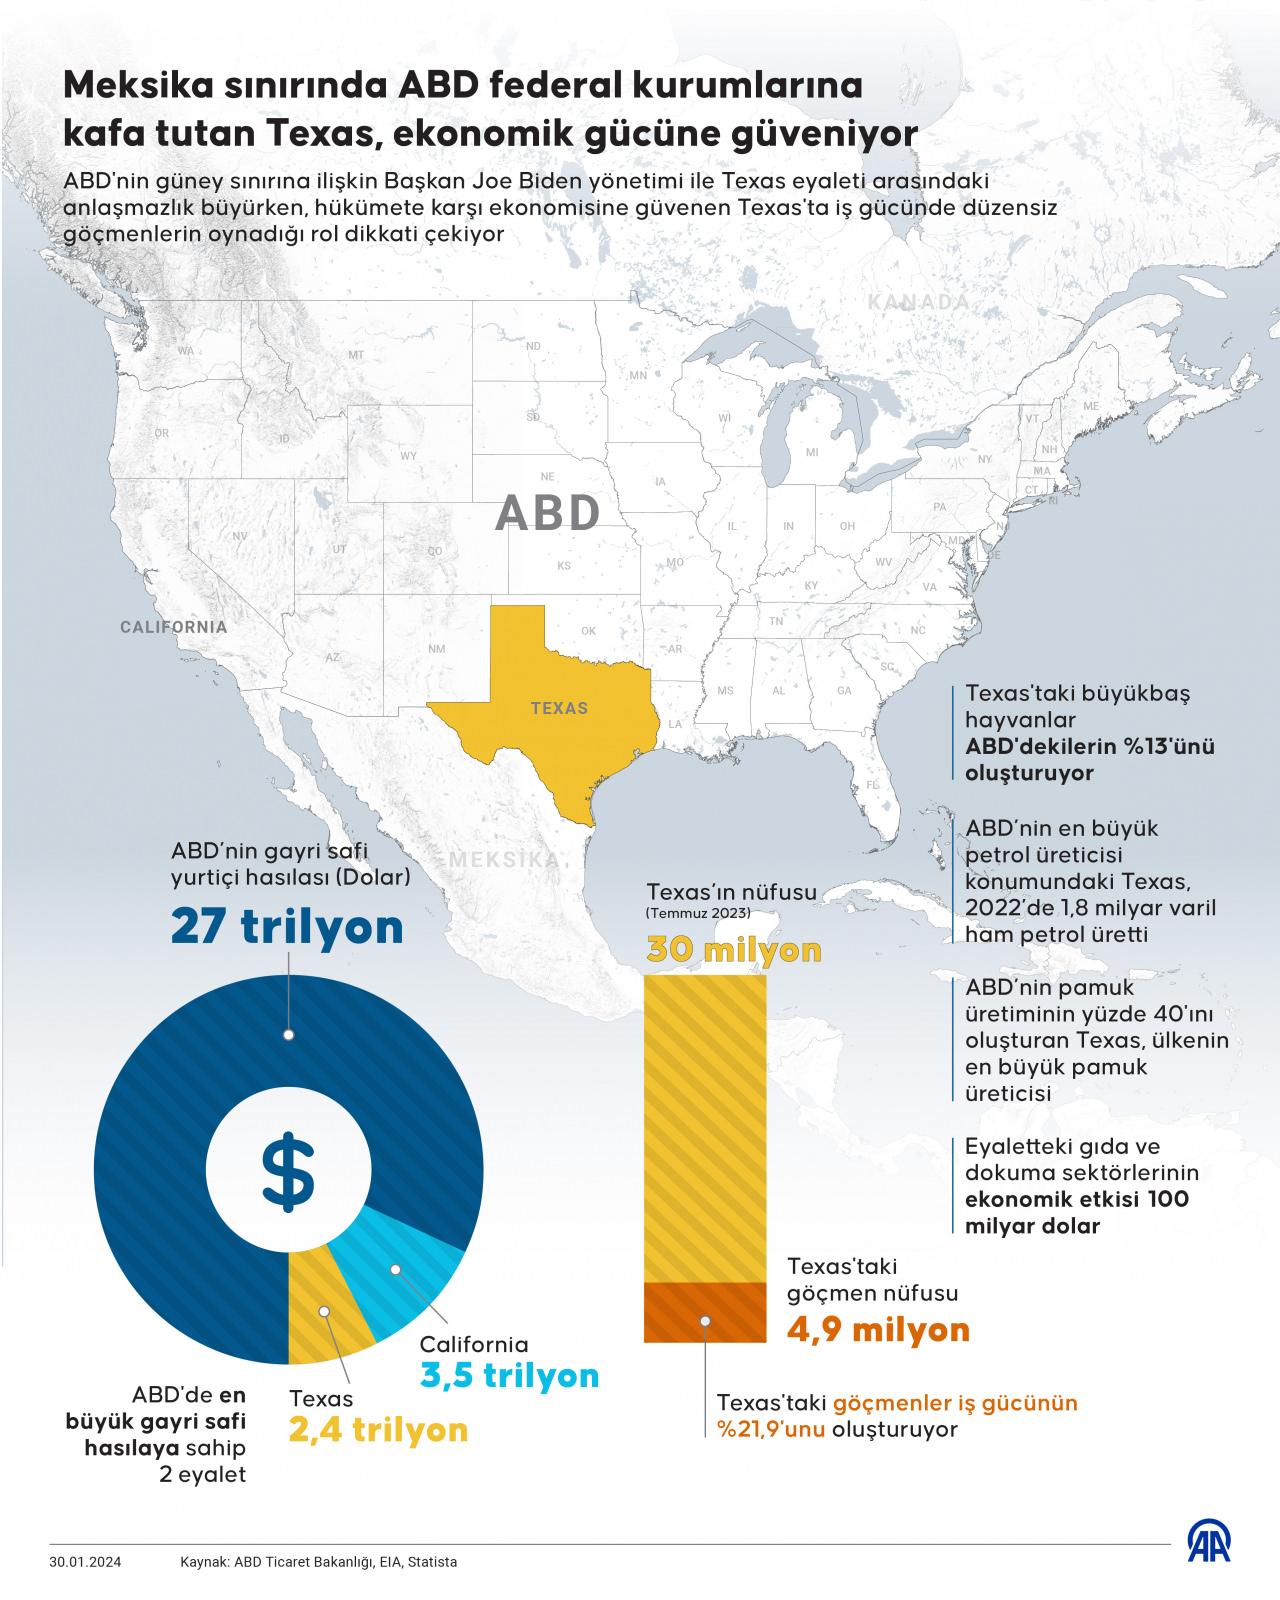 Teksas 2,4 trilyon dolarlık ekonomisiyle ABD’nin en güçlü ikinci eyaleti